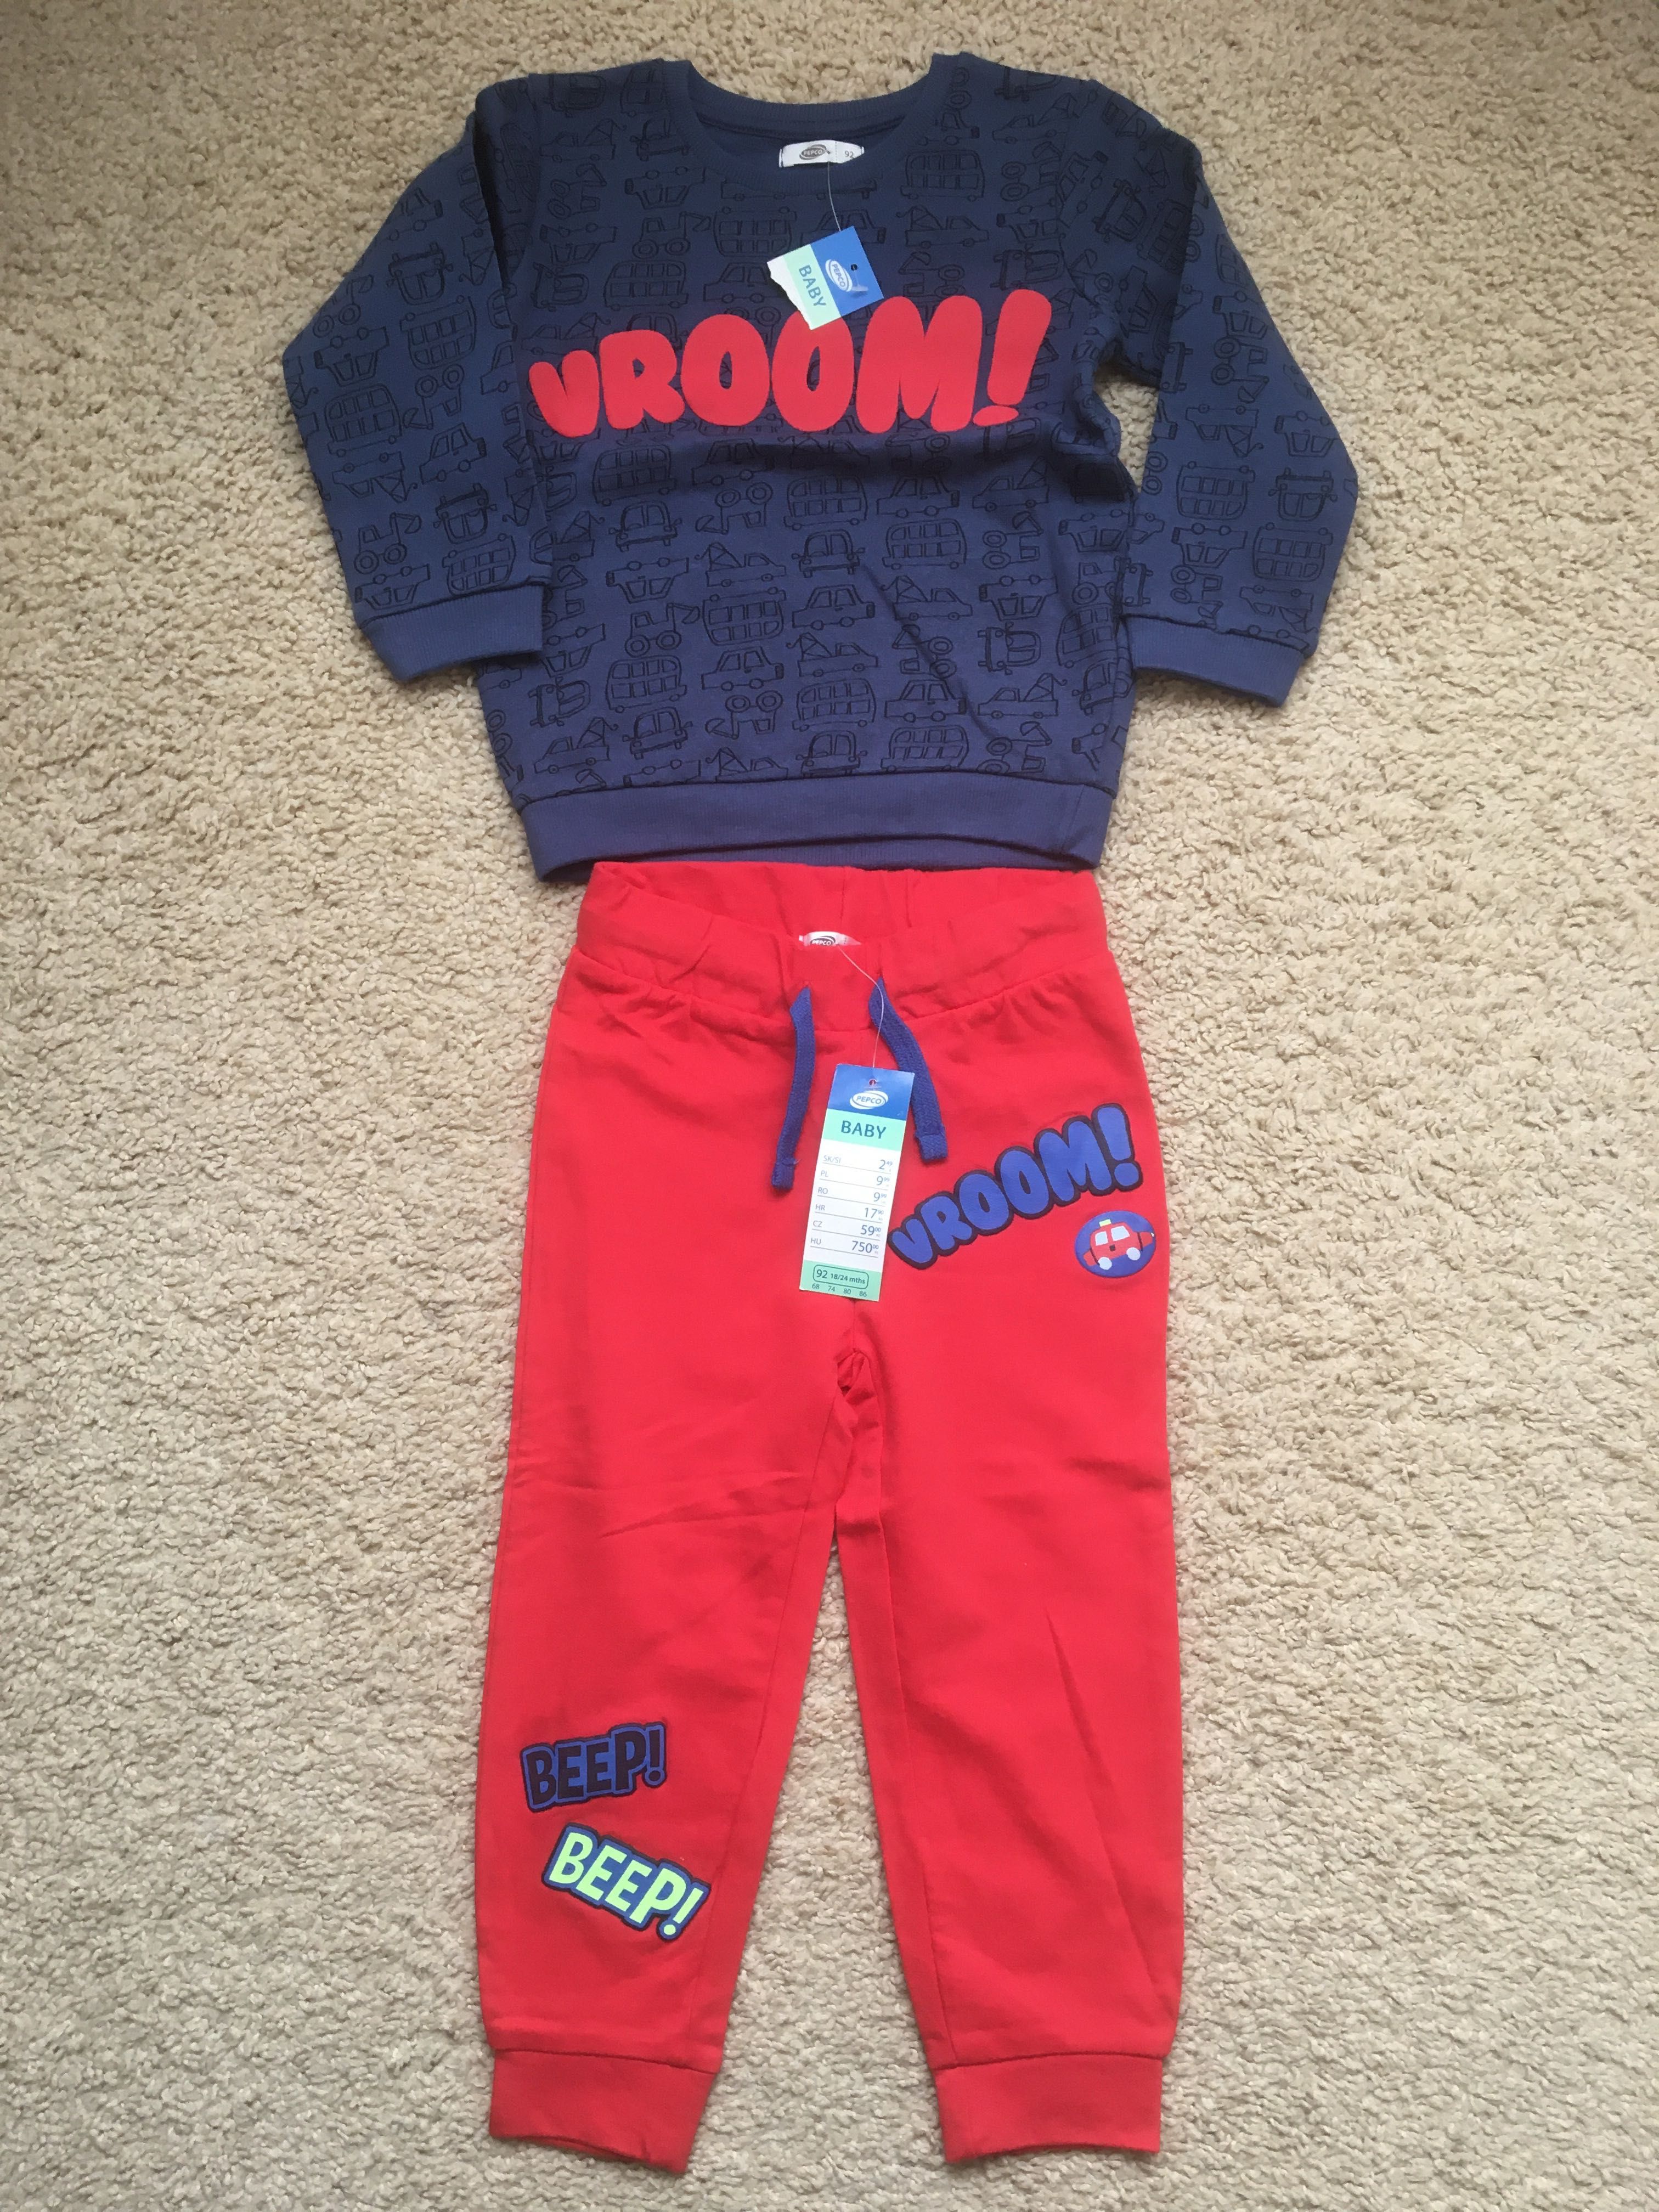 Bluza+spodnie dla dziecka 92, dla chłopca, 18-24 miesiące